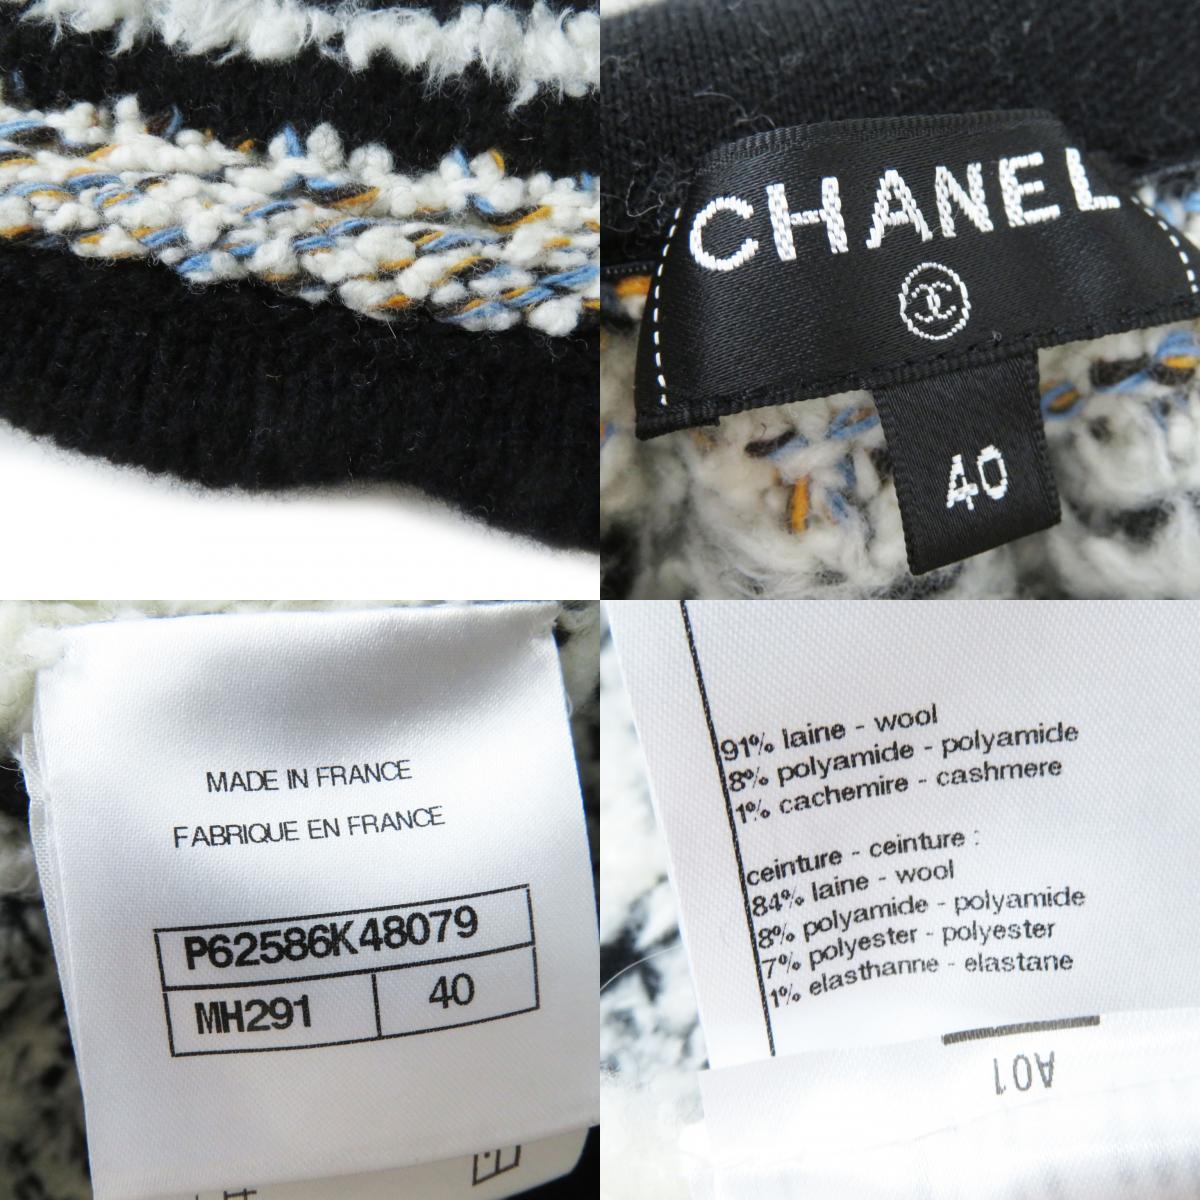  превосходный товар CHANEL Chanel 19K P62586 талия Logo × здесь Mark вязаный flair юбка белый × чёрный nordic рисунок 40. производства стандартный товар женский 